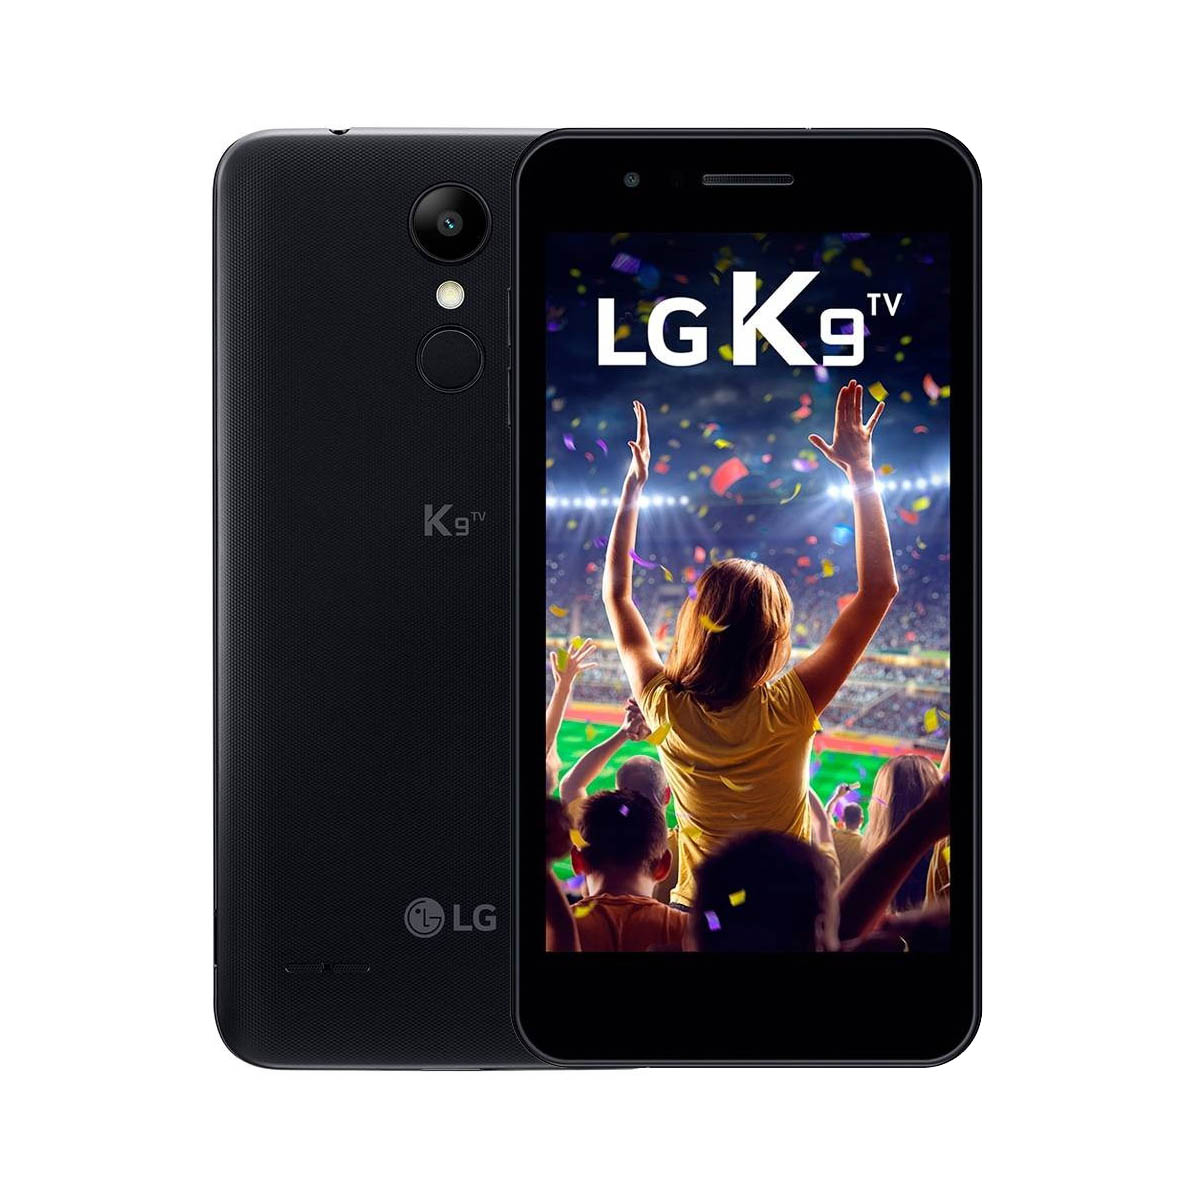 Smartphone Lg K9 TV X210 Tela 5.0' 16GB 4g 8mp - Seminovo